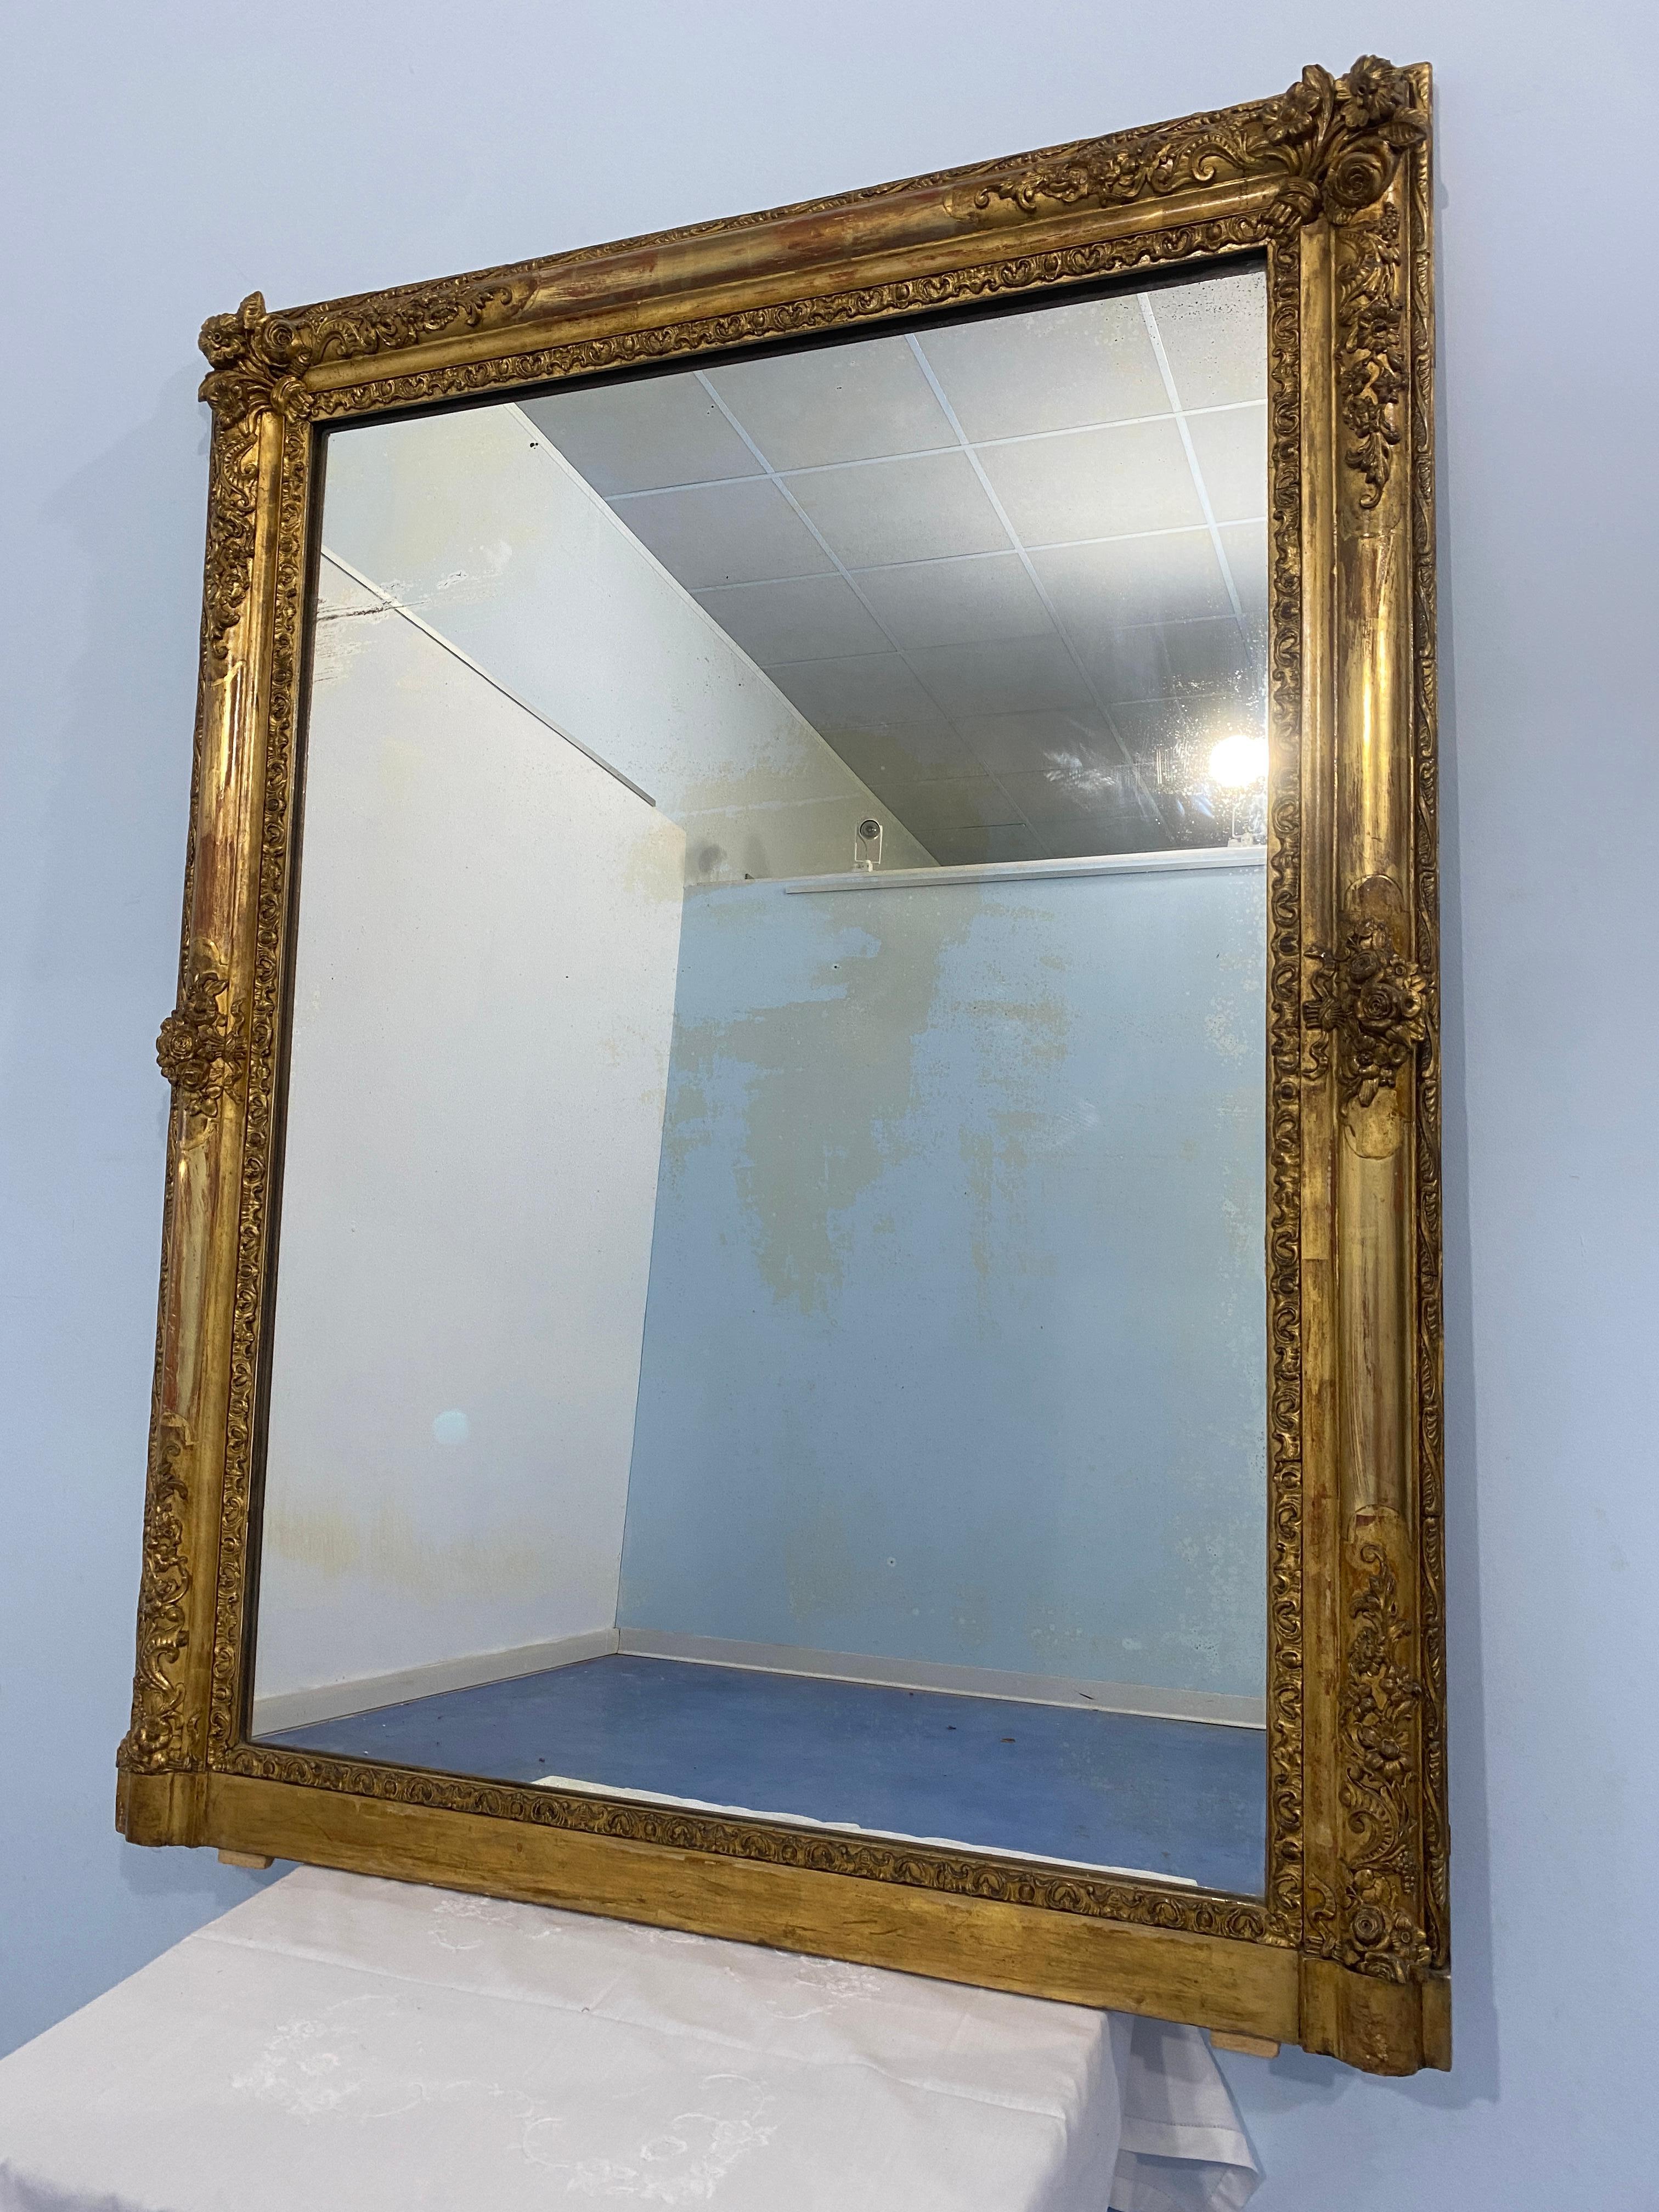 Raffinata specchiera francese epoca Napoleone Terzo, 1870, dorata a foglia d'oro. La cornice è ornata da splendidi motivi floreali a rilievo intagliati nel legno, ed è arricchita nella parte interna e nella parte esterna  da ulteriori motivi